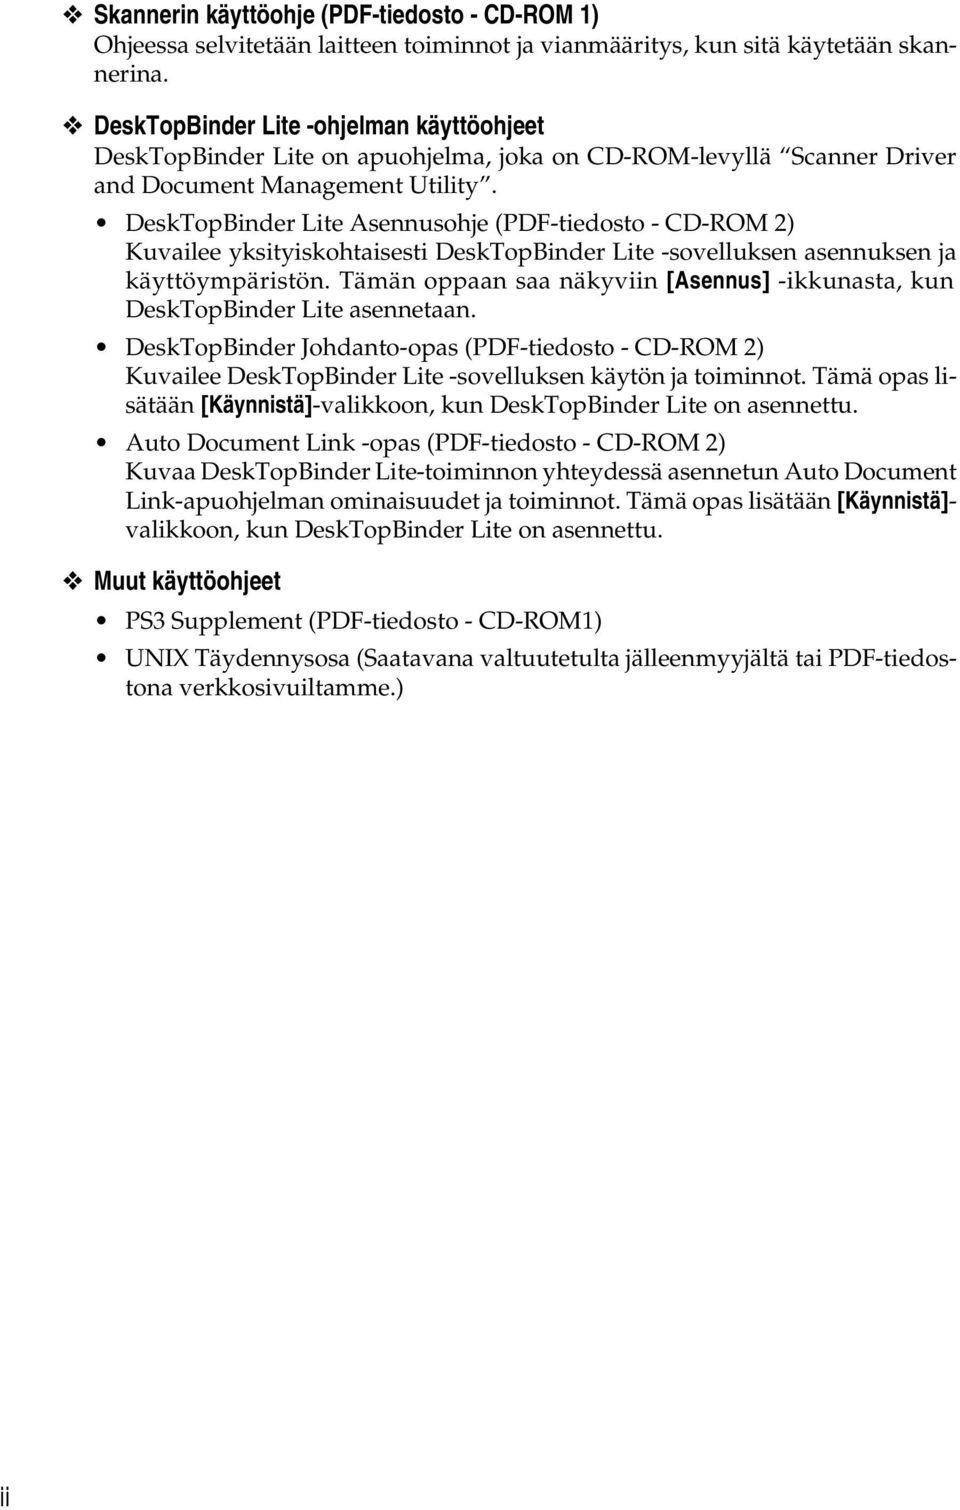 DeskTopBinder Lite Asennusohje (PDF-tiedosto - CD-ROM ) Kuvailee yksityiskohtaisesti DeskTopBinder Lite -sovelluksen asennuksen ja käyttöympäristön.